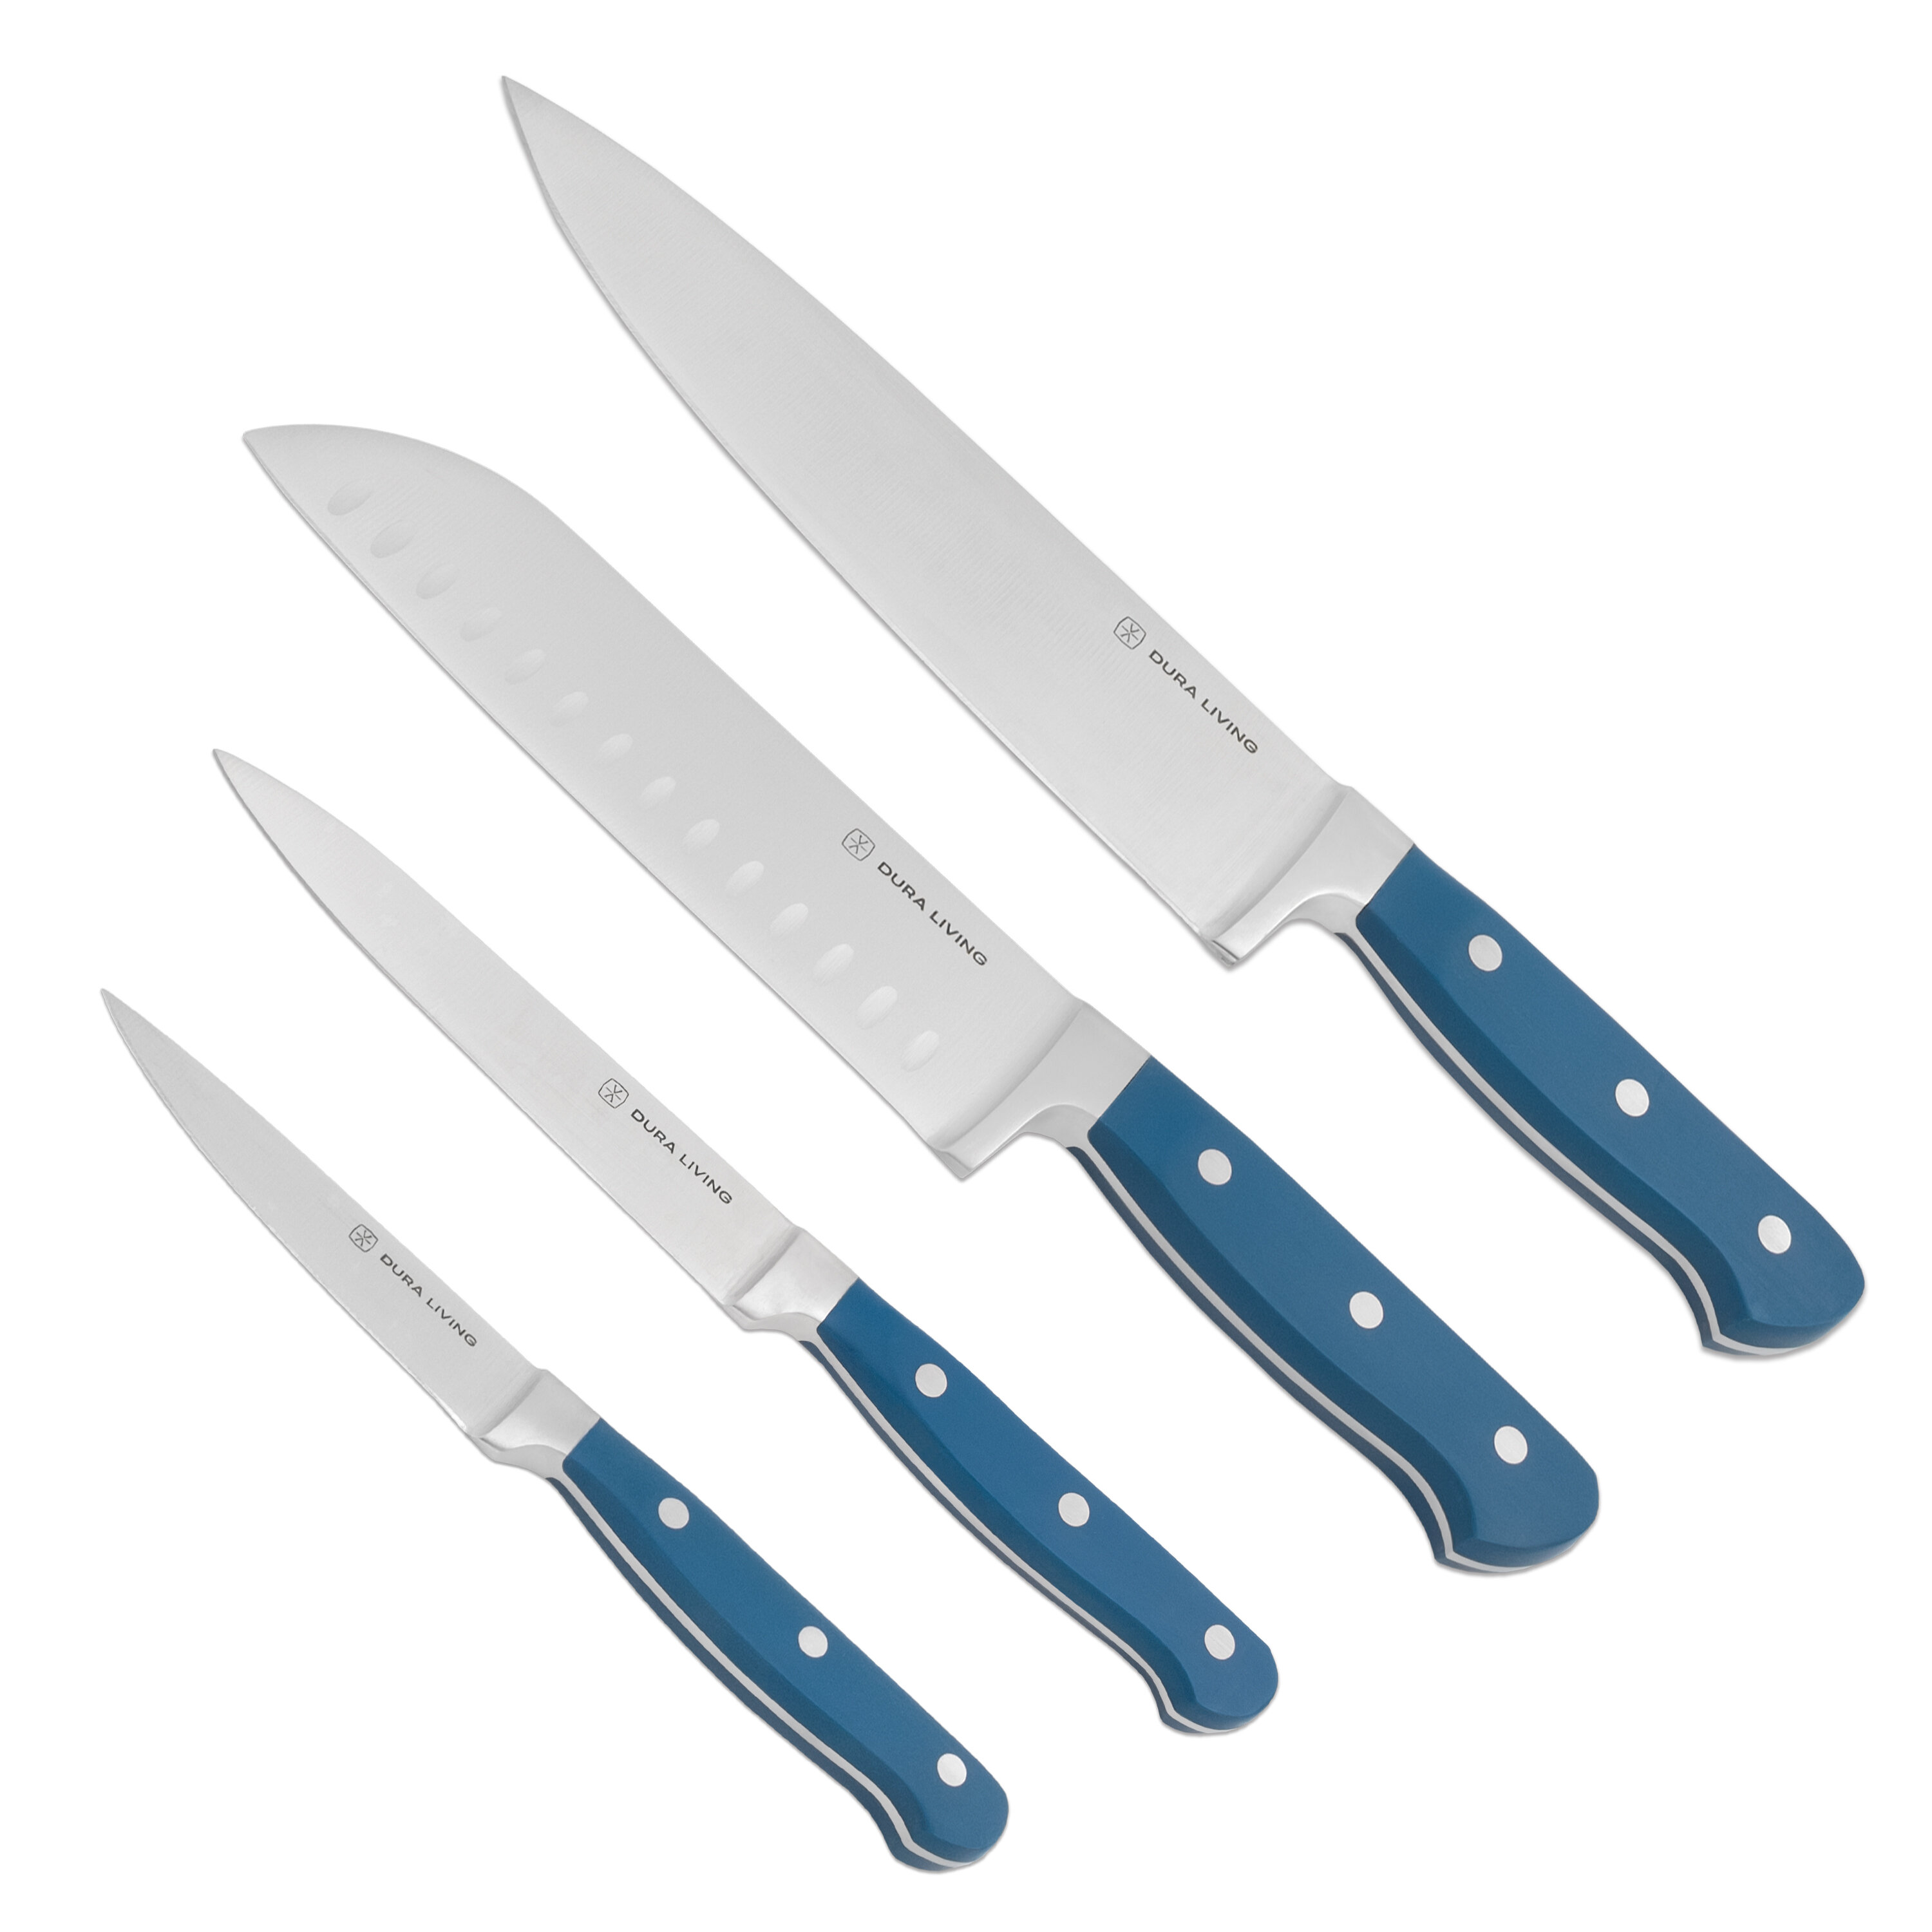 Cheer Collection 6-Piece Kitchen Knife Set - Premium Stainless Steel Blades